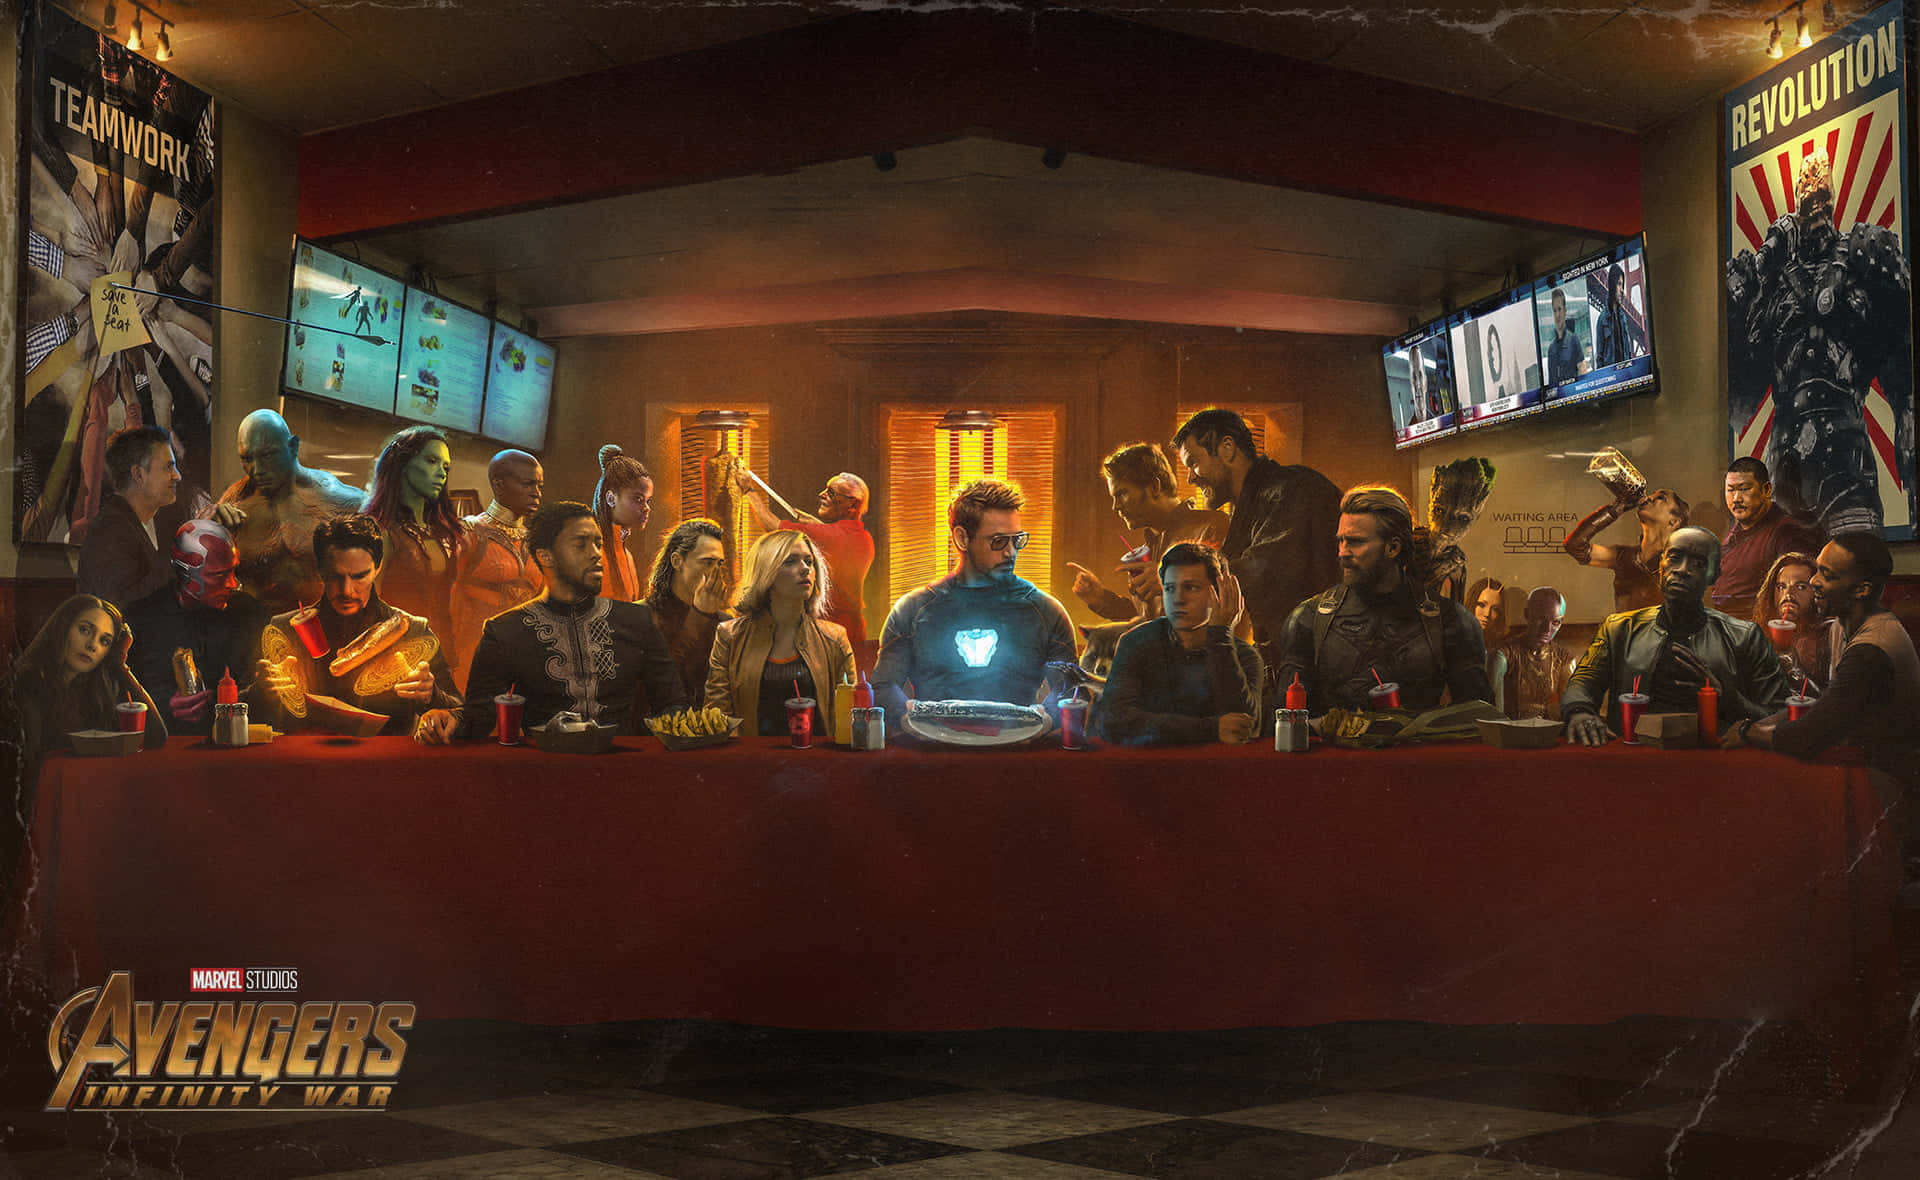 MarvelUniversum Avengers Infinity War Poster Wallpaper